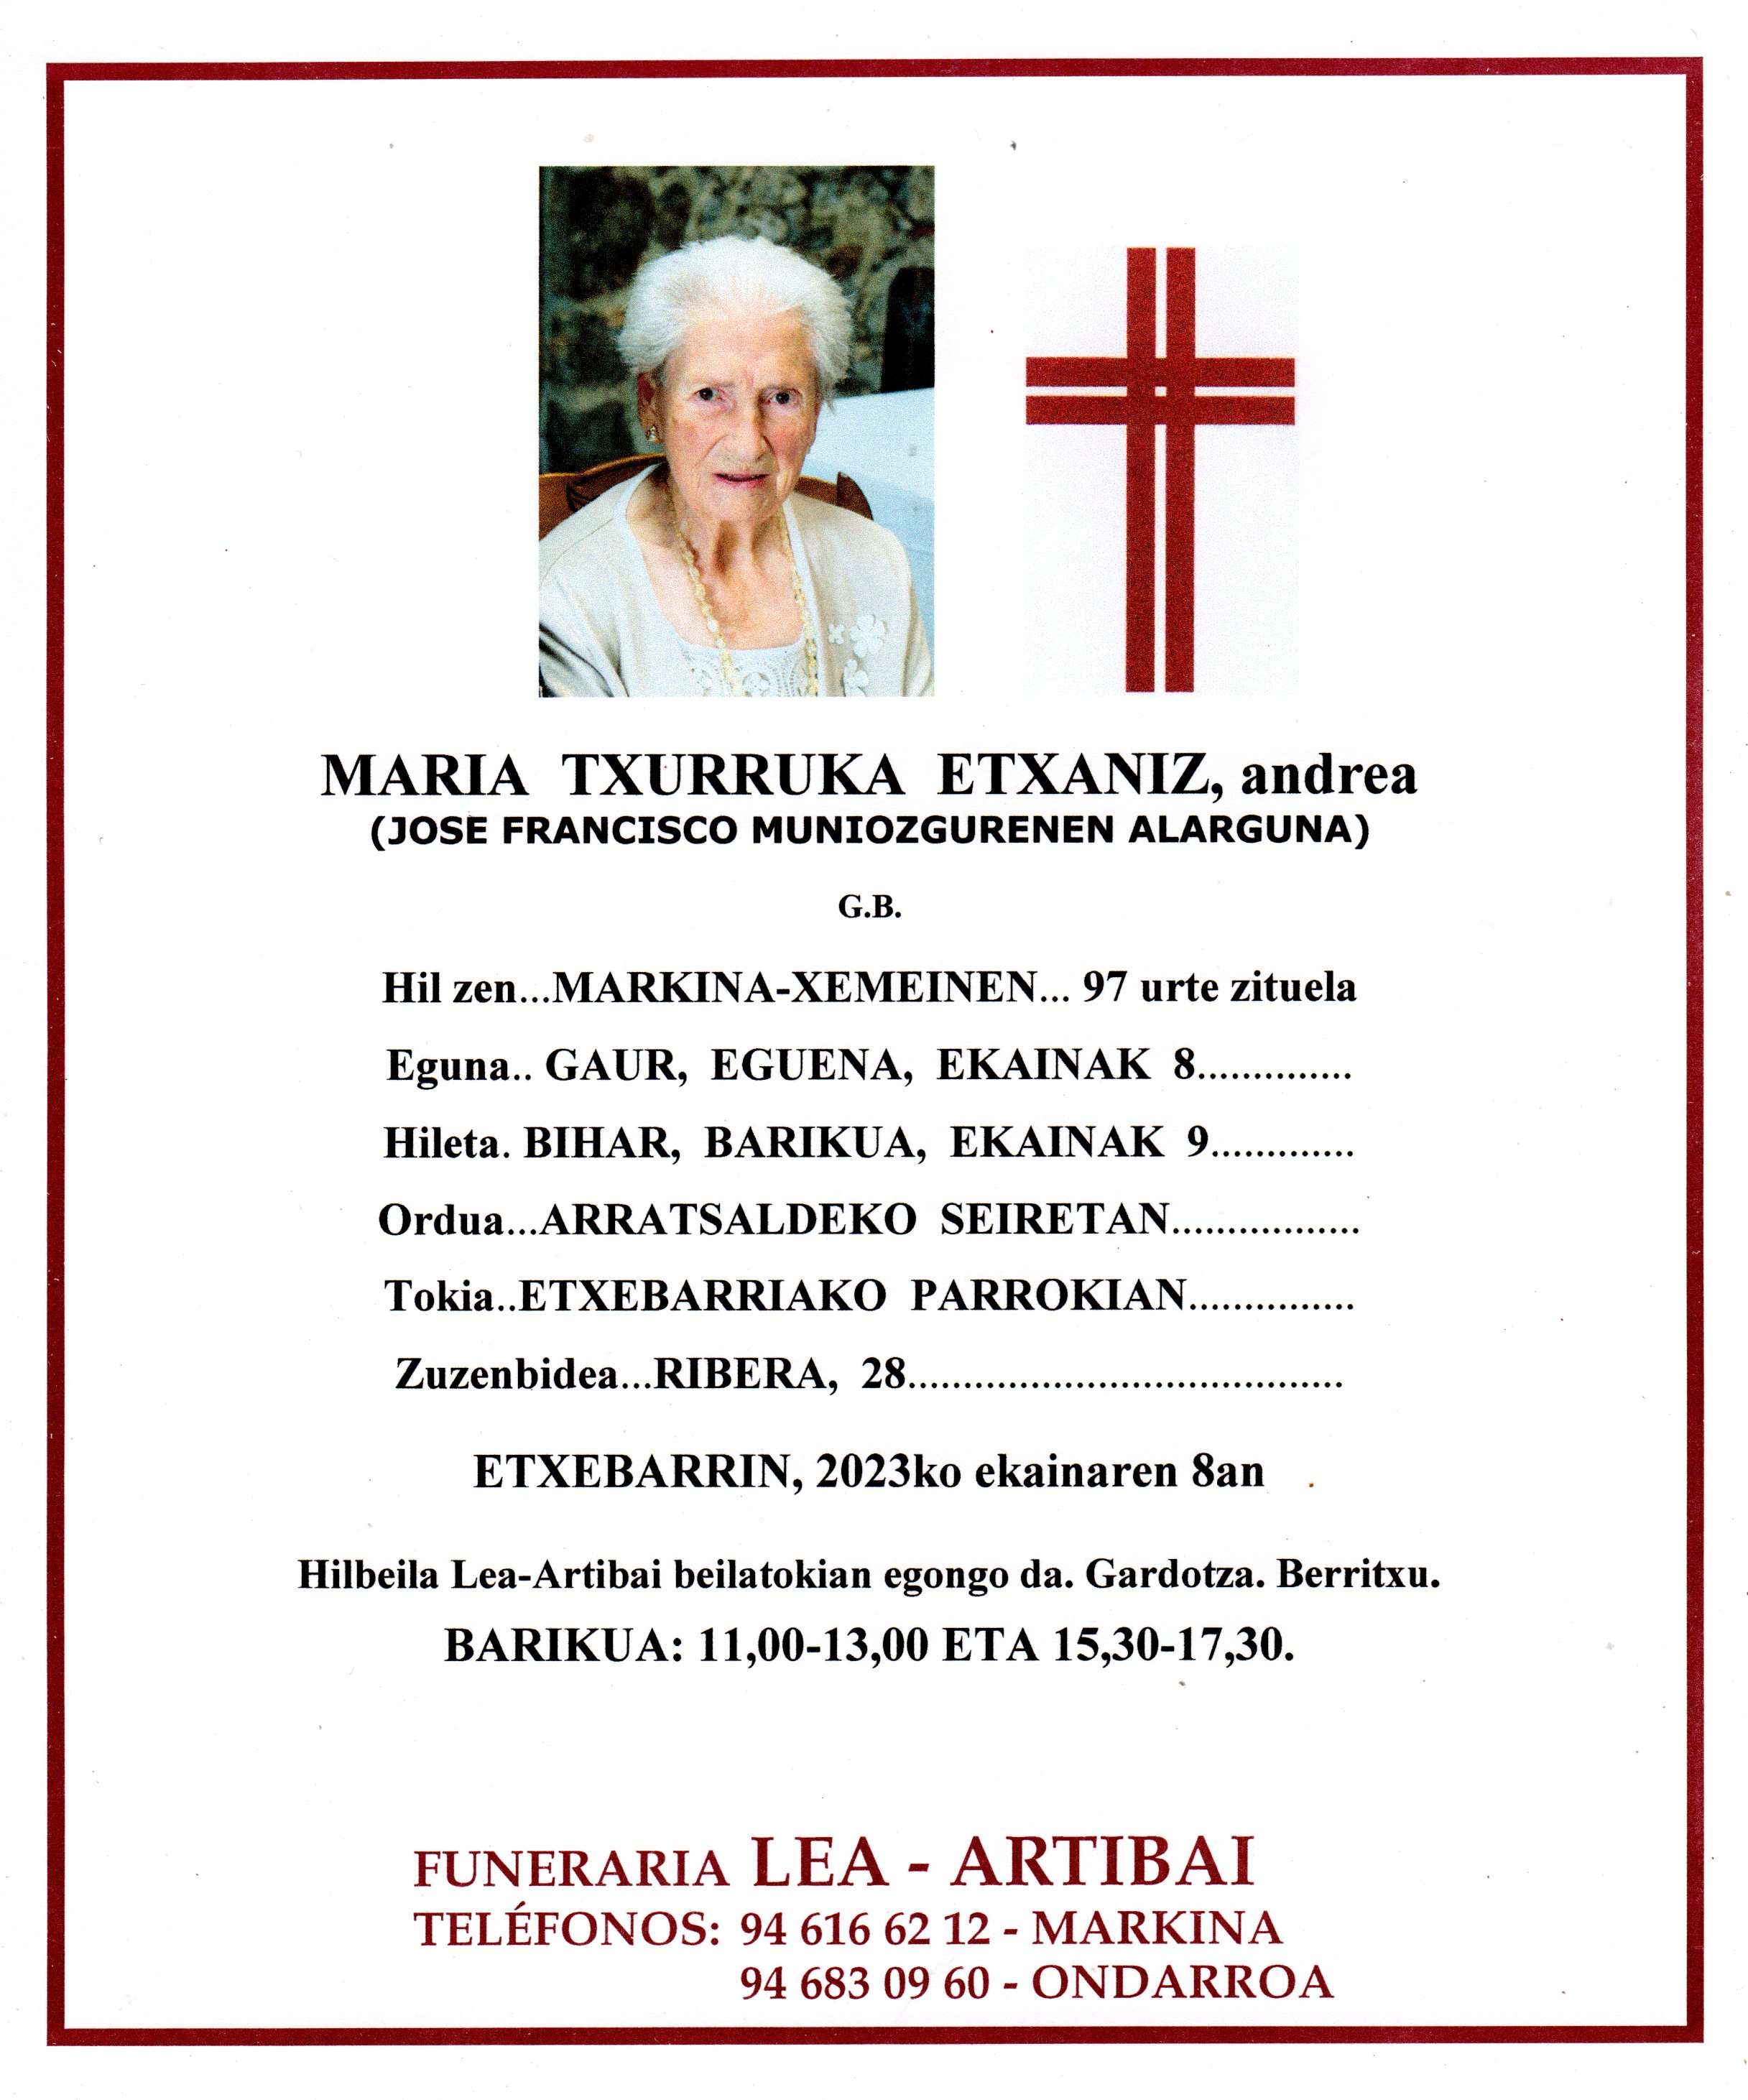 Maria Txurruka Etxaniz